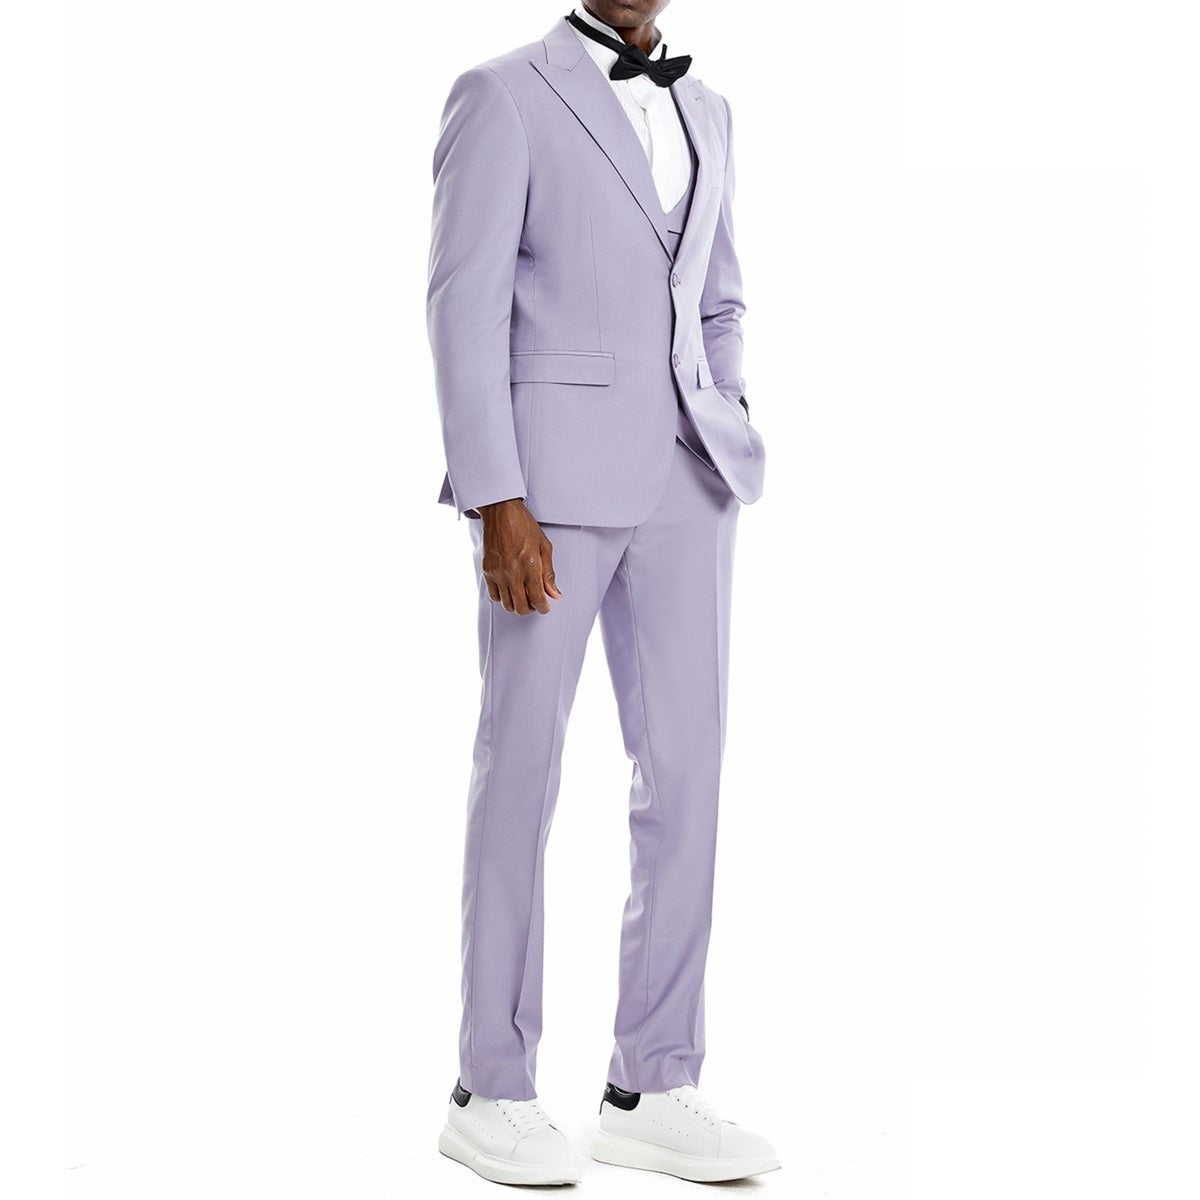 Traje Formal para Hombre TA-M370SK-02 - Formal Suit for Men